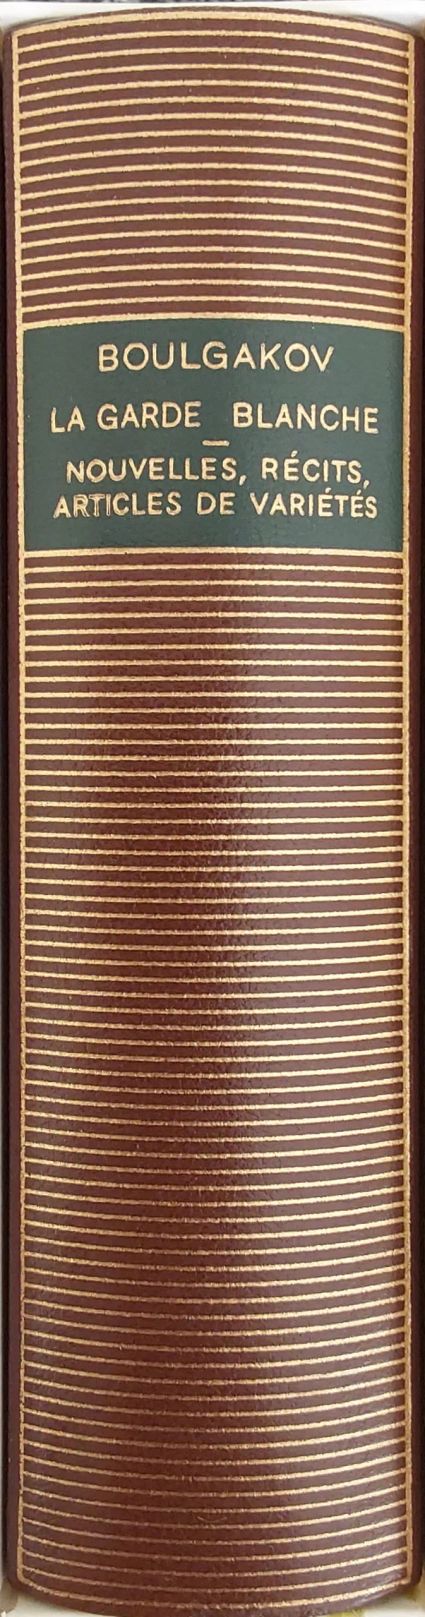 Volume 439 de Mikhail Boulgakov dans la bibliothèque de la Pléiade